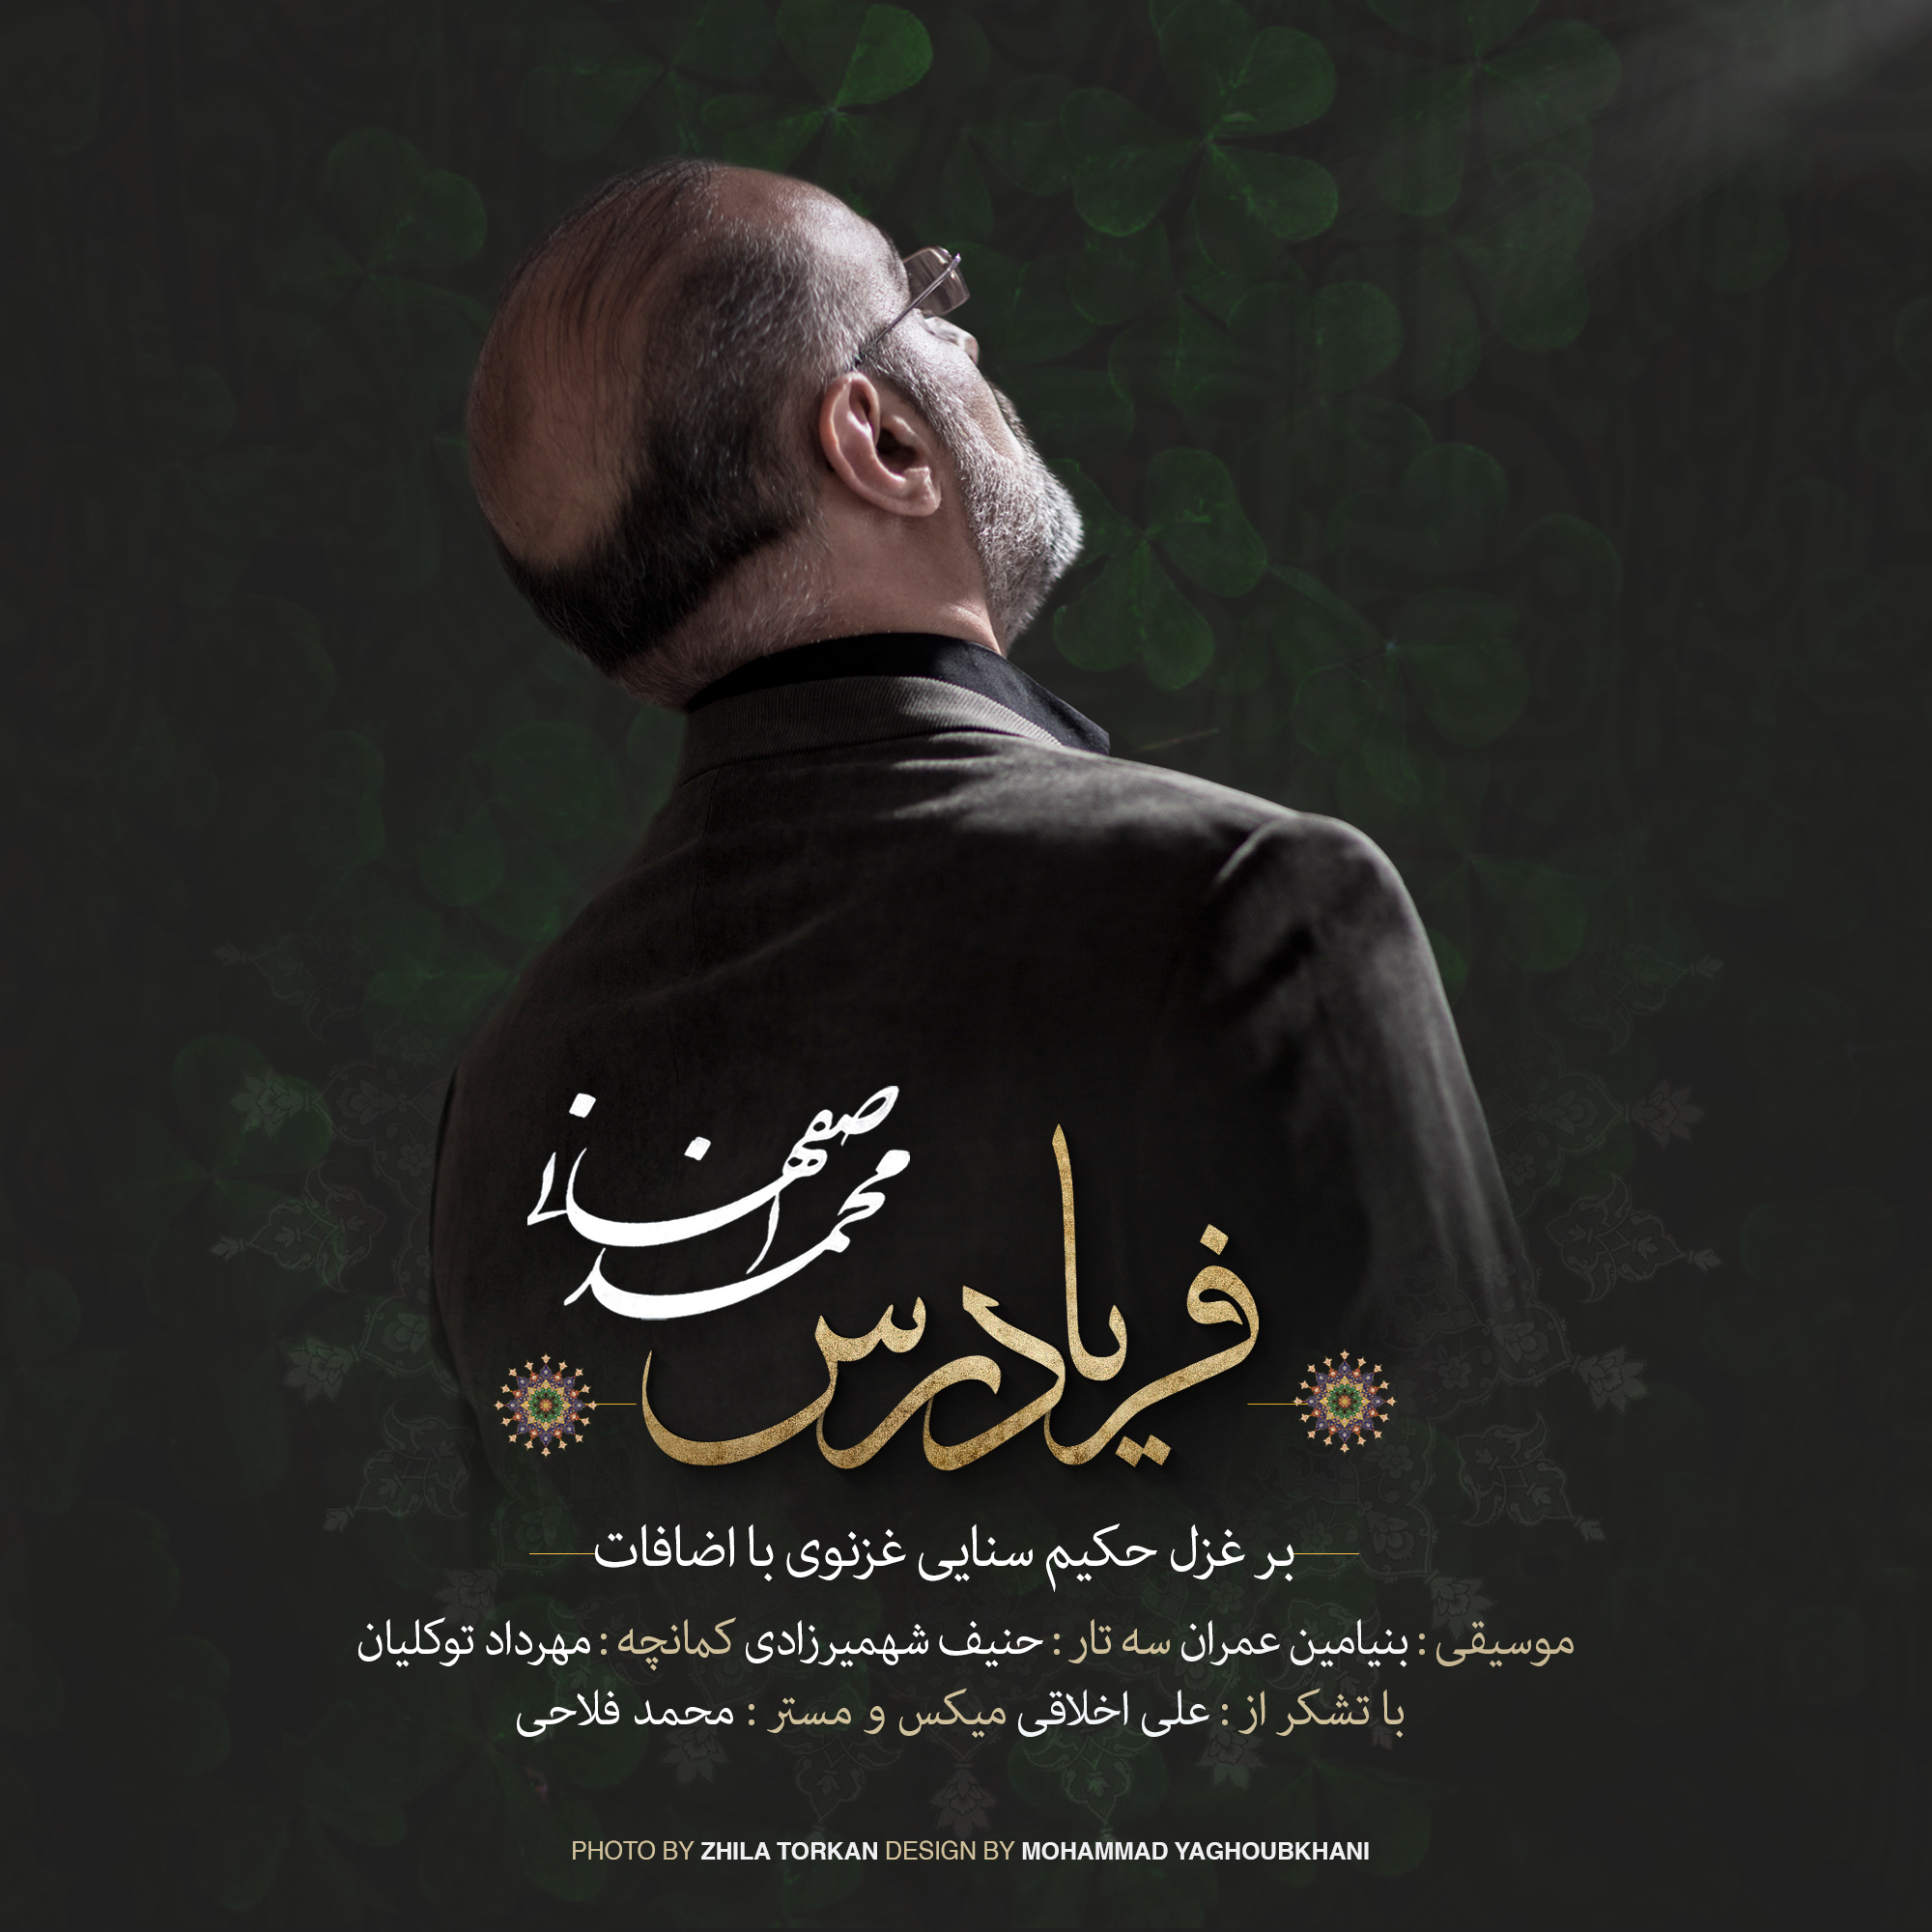  دانلود آهنگ جدید محمد اصفهانی - فریادرس | Download New Music By Mohammad Esfahani - Faryad Ras